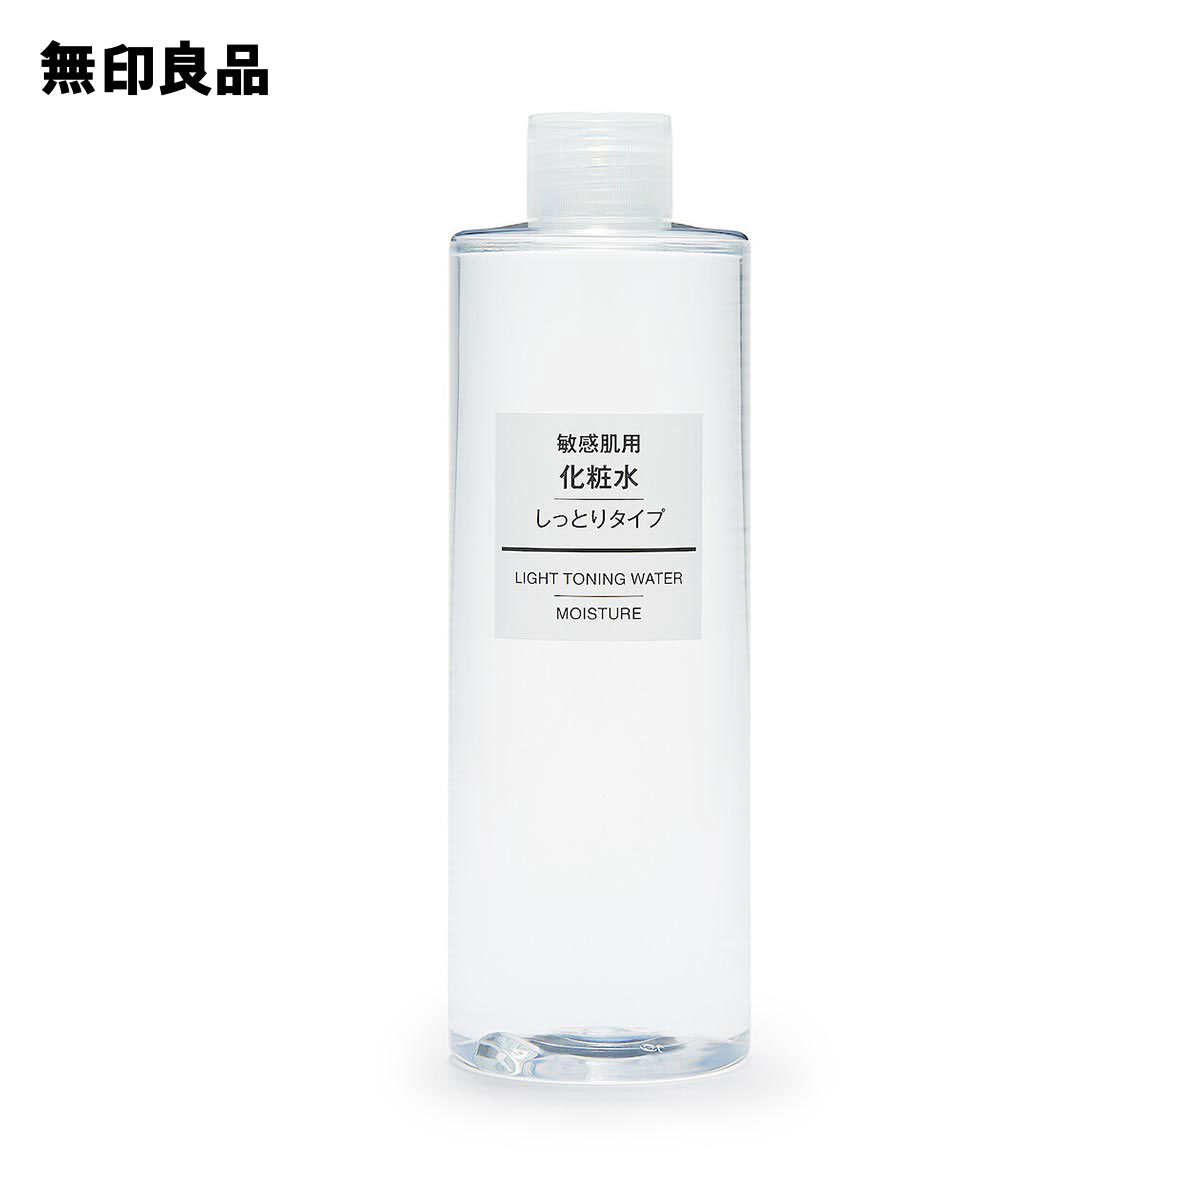 【無印良品 公式】 化粧水・敏感肌用・しっとりタイプ 大容量 400ml